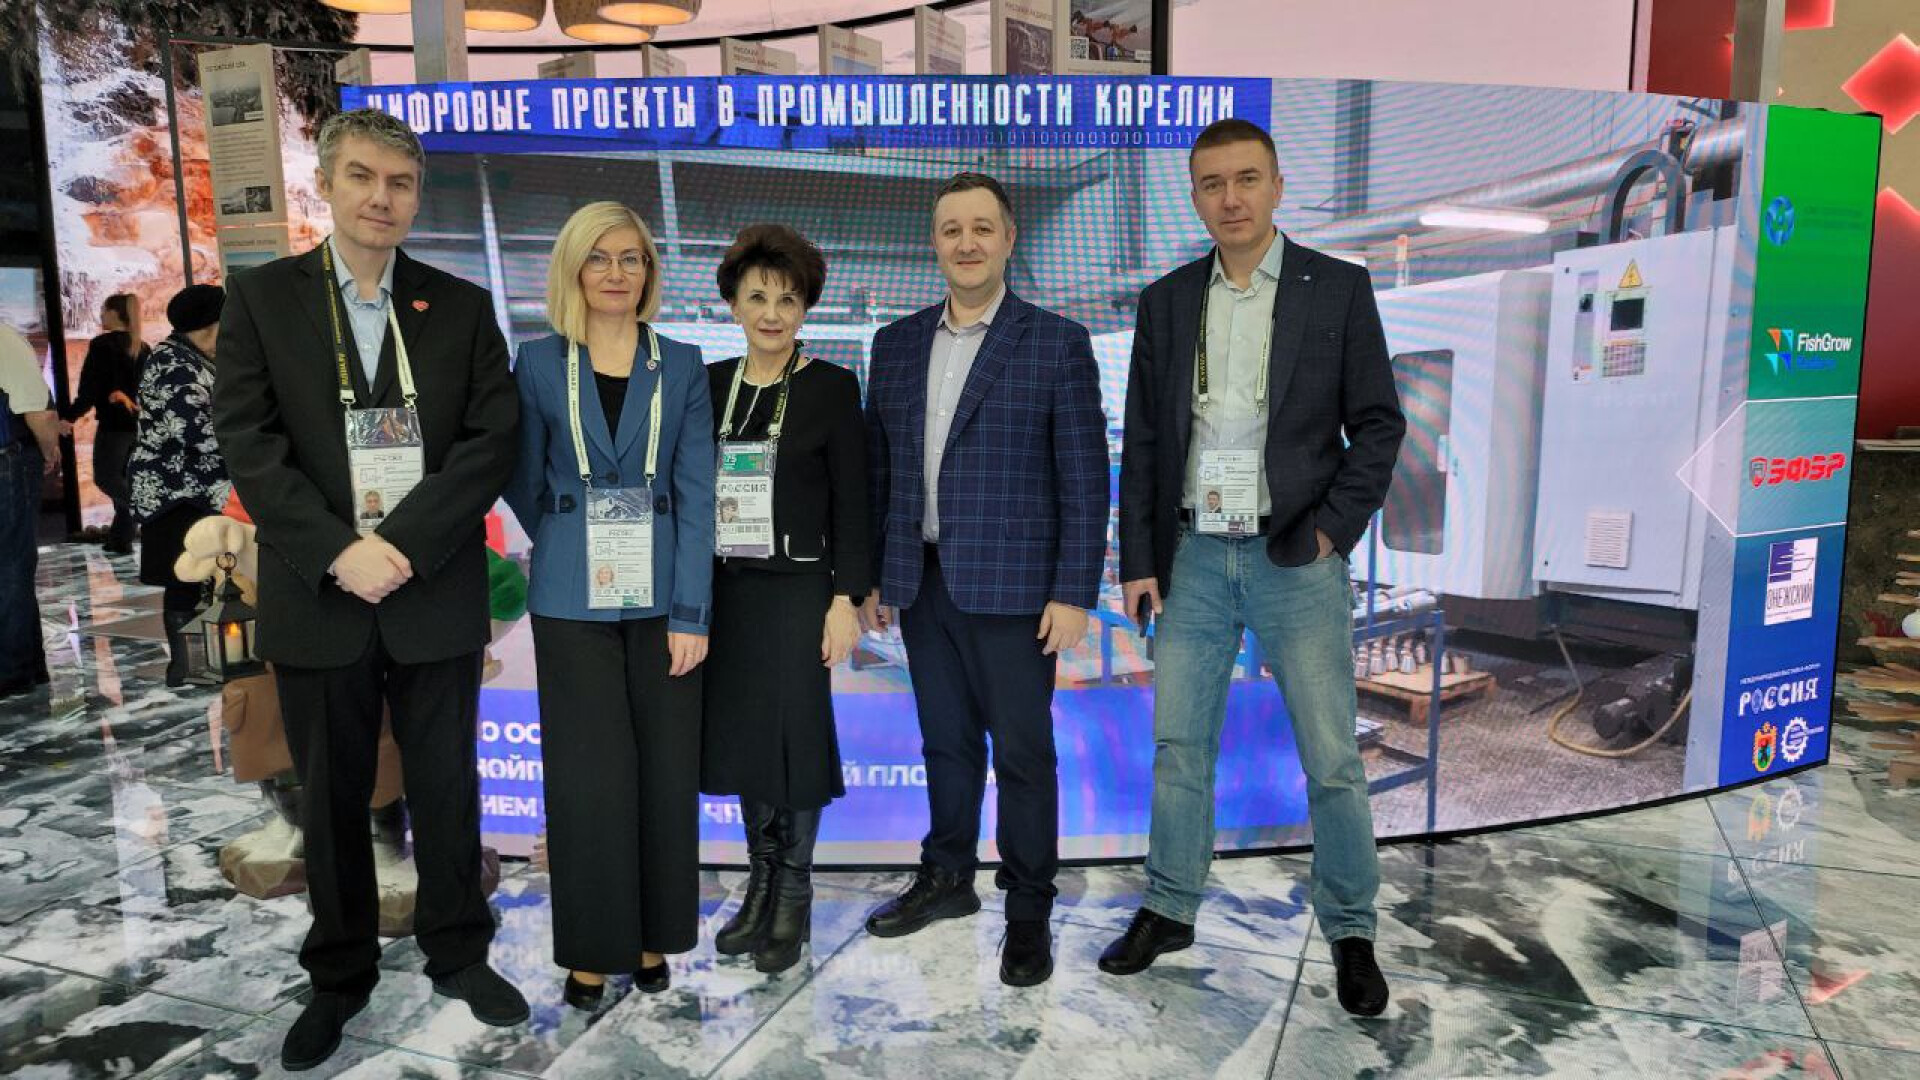 "День цифровизации" на Международной выставке-форуме "Россия"